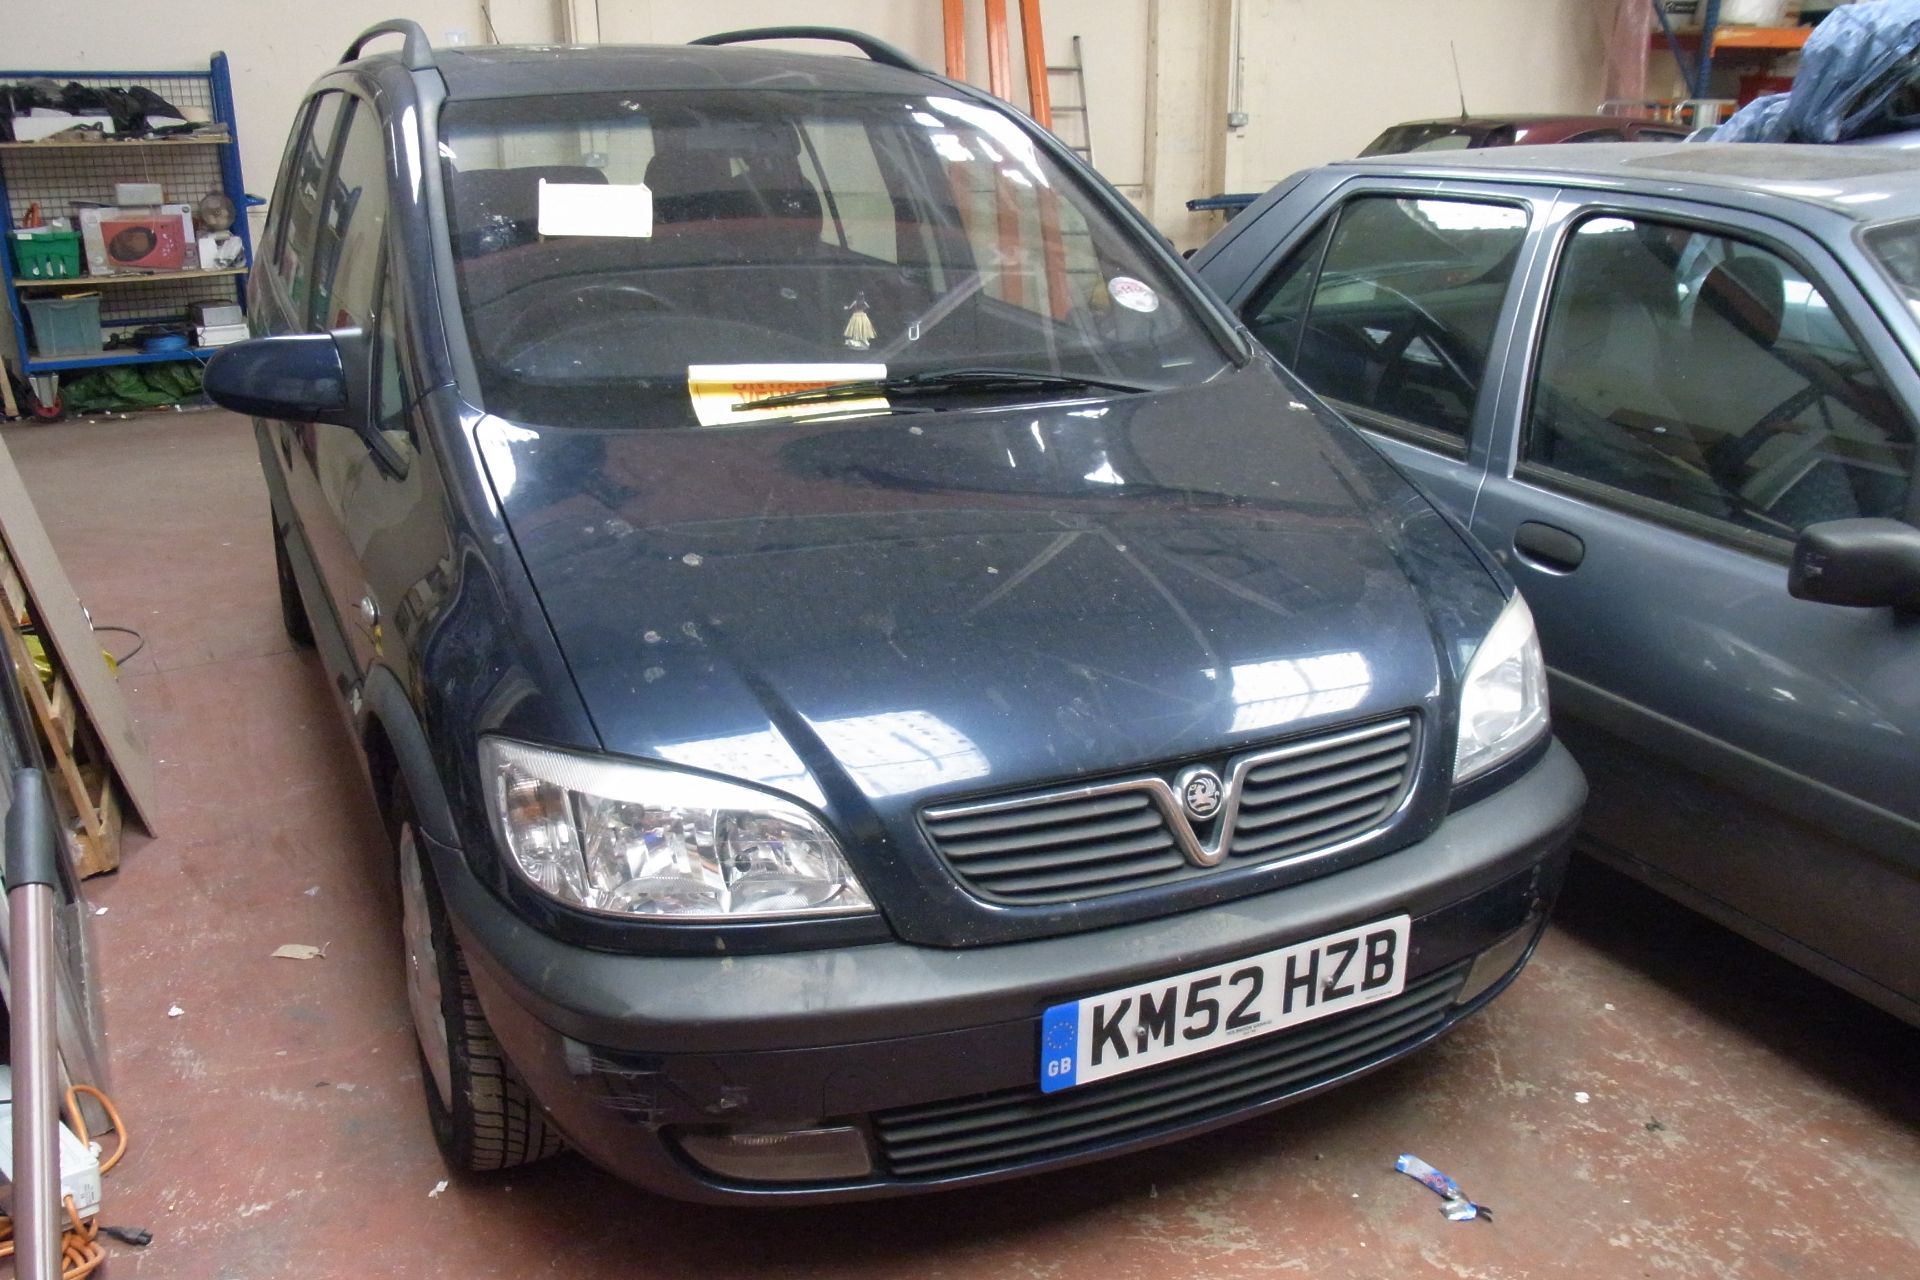 KM52 HZB Vauxhall Zafira Elegance DTI 16V with V5 - Image 2 of 3